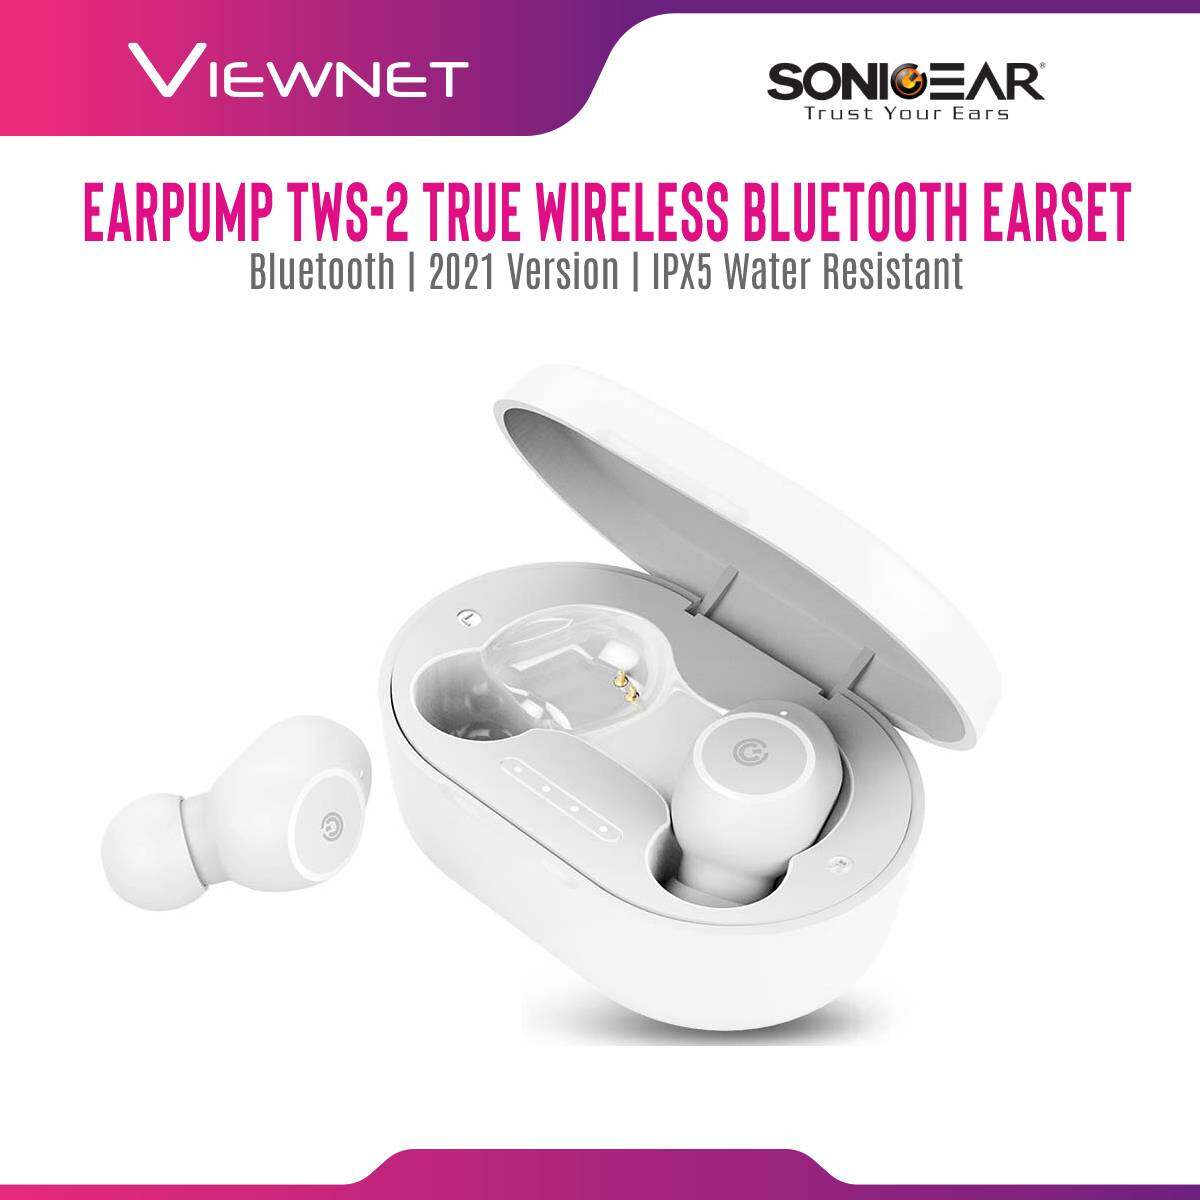 SonicGear Earpump TWS-2 True Wireless Bluetooth Earset with IPX5 Water Resistant